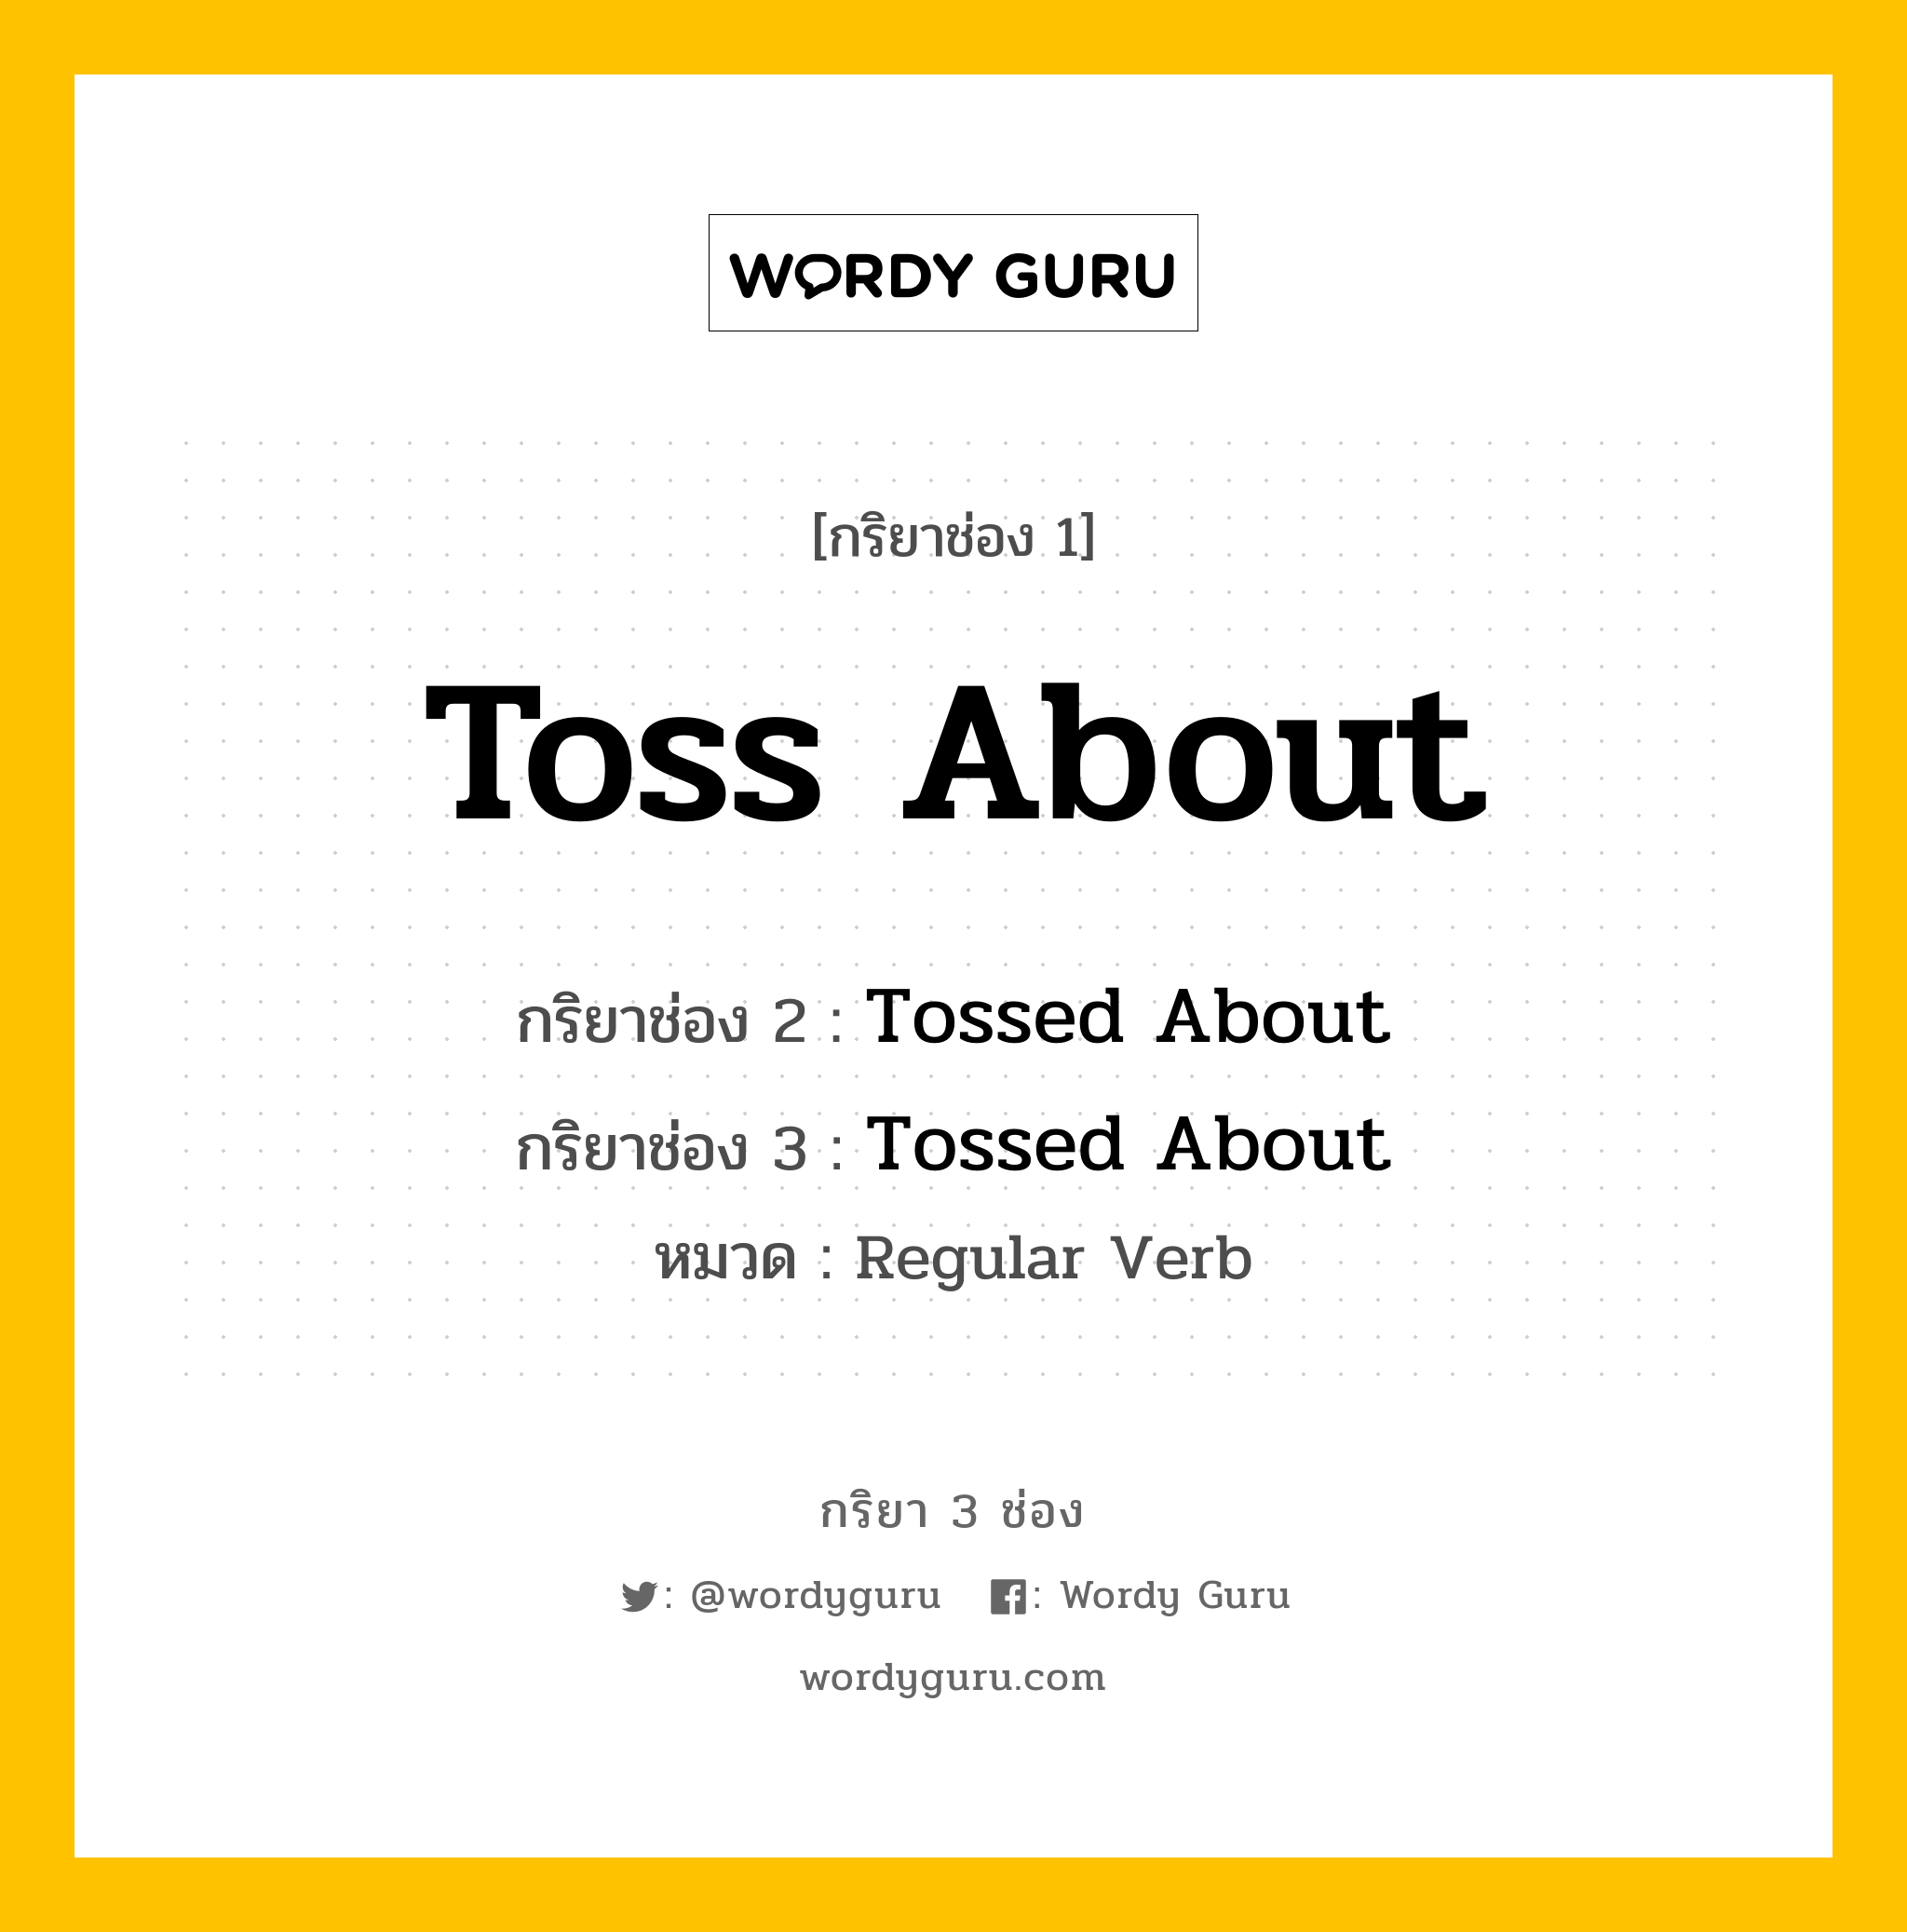 กริยา 3 ช่อง: Toss About ช่อง 2 Toss About ช่อง 3 คืออะไร, กริยาช่อง 1 Toss About กริยาช่อง 2 Tossed About กริยาช่อง 3 Tossed About หมวด Regular Verb หมวด Regular Verb